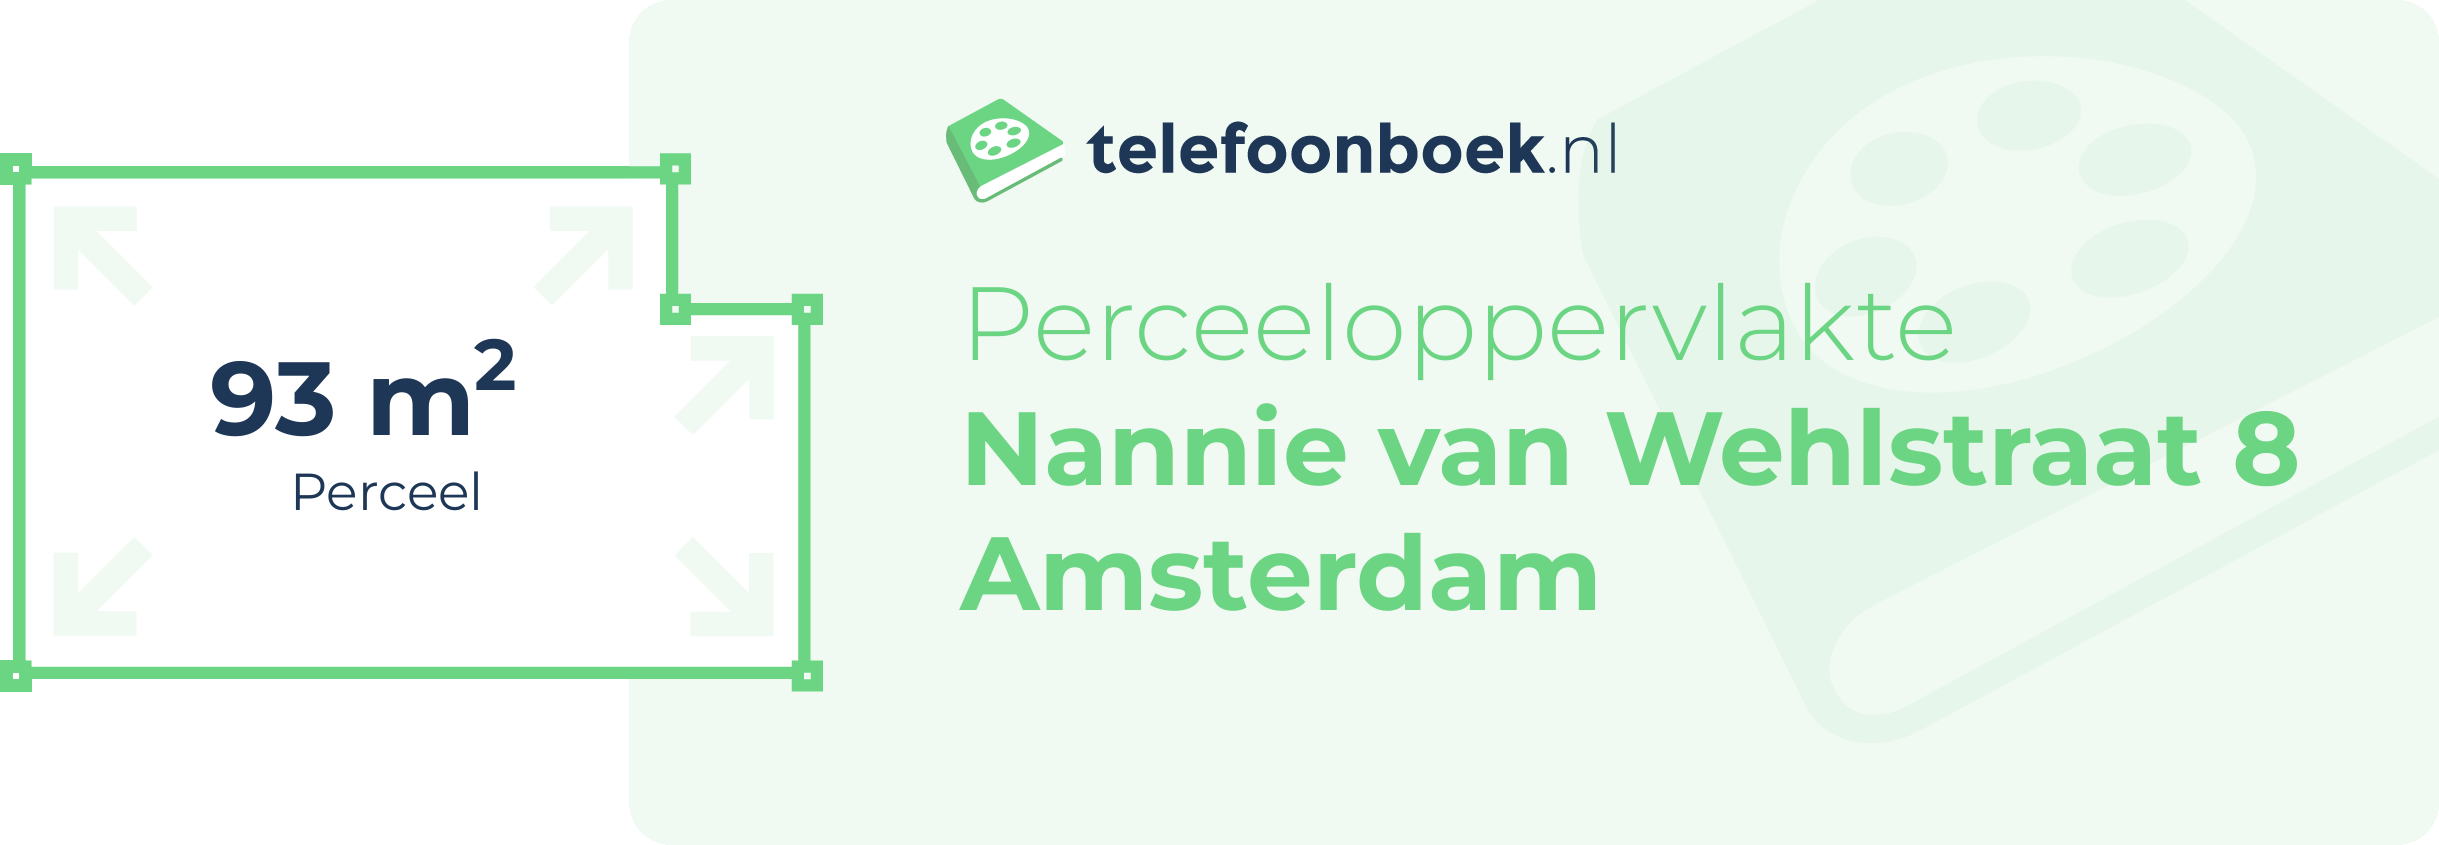 Perceeloppervlakte Nannie Van Wehlstraat 8 Amsterdam